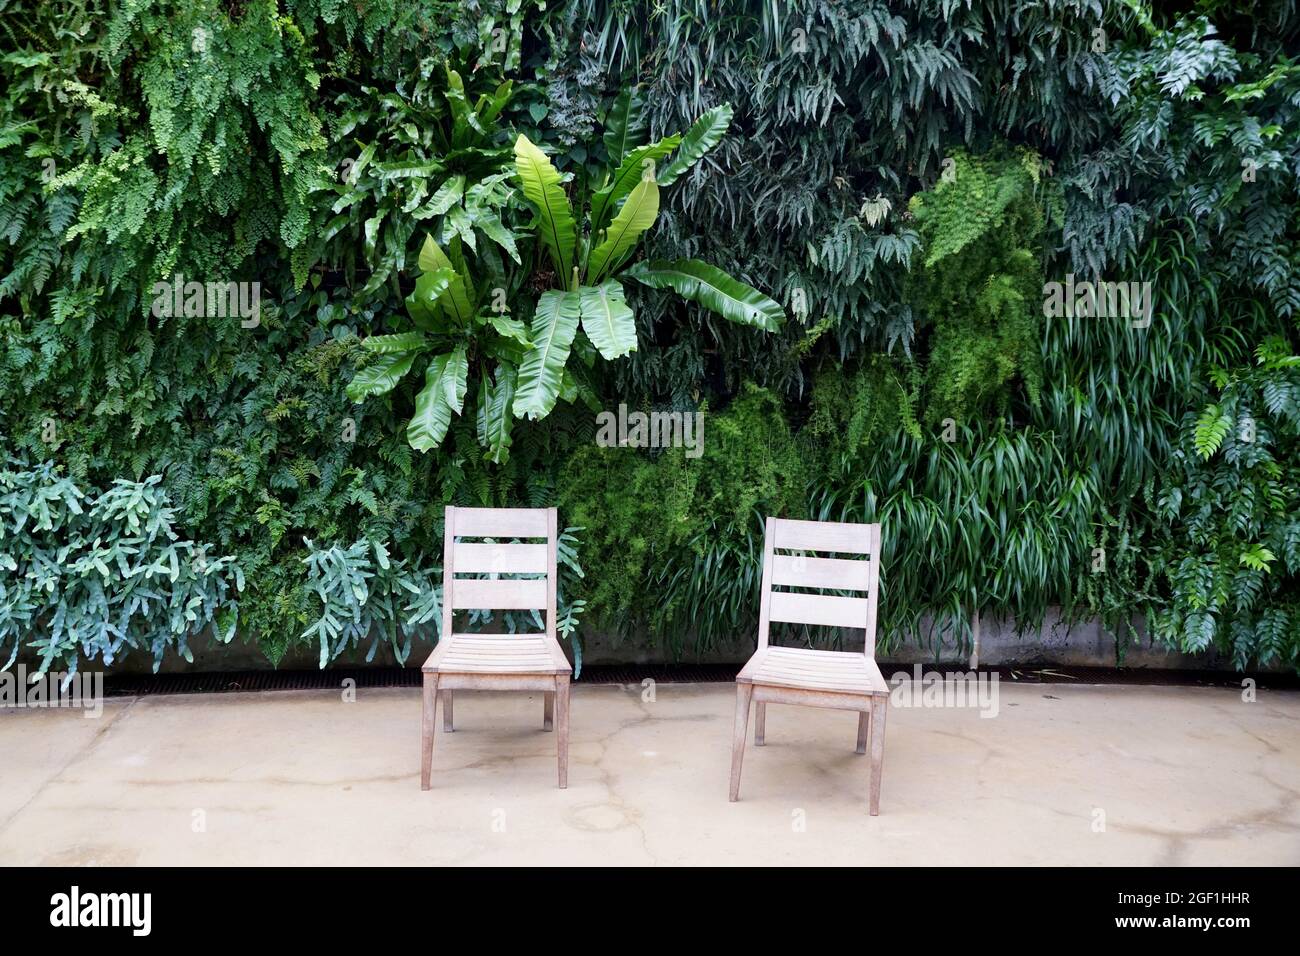 Eine Vielzahl von grünen Farnpflanzen wächst an der Wand durch zwei leere weiße Stühle Stockfoto